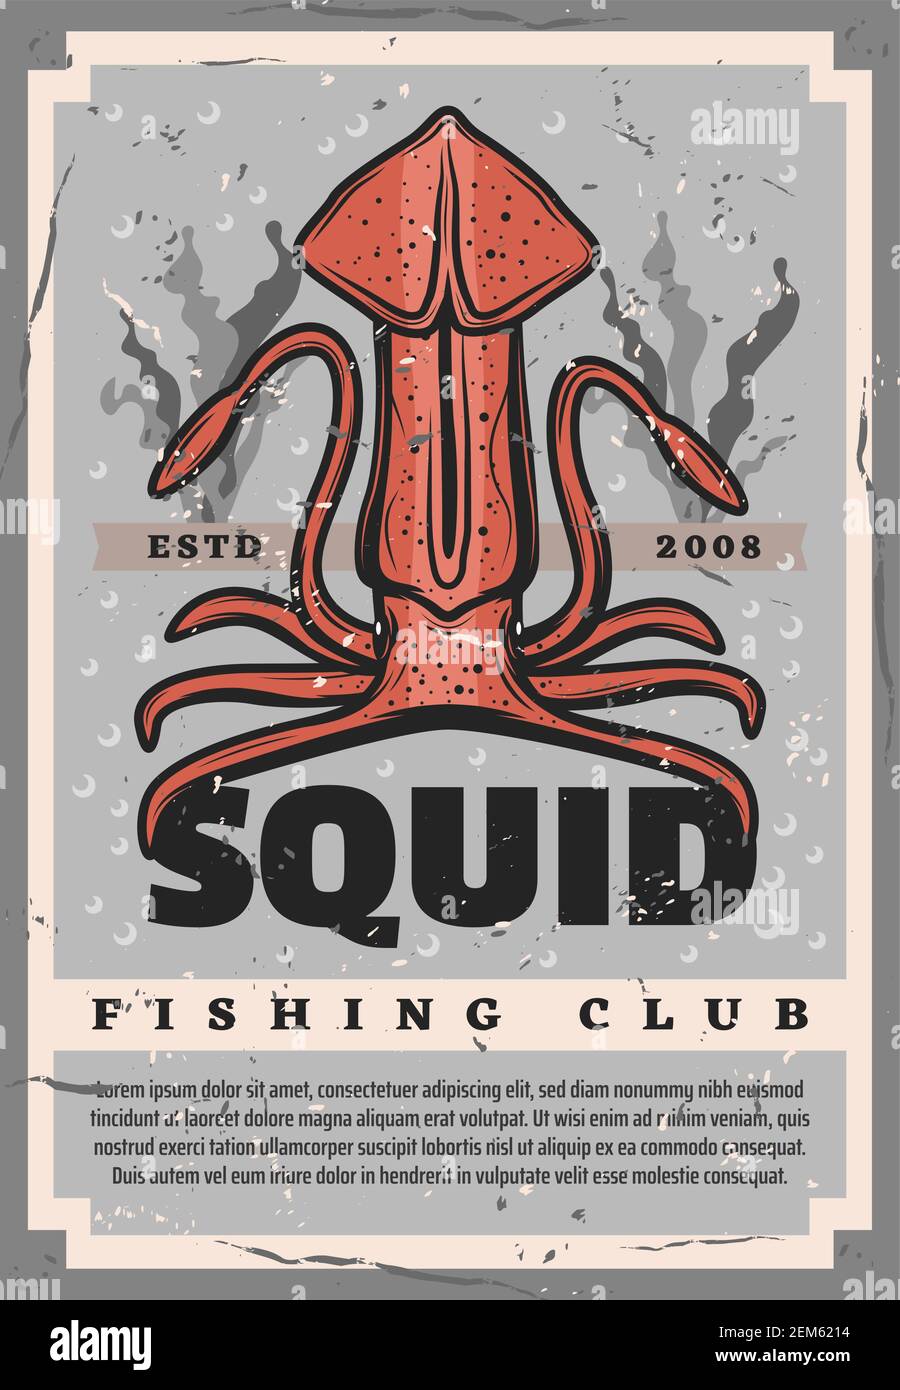 Poster retrò con calamari per il disegno di club di pesca. Enorme vettore calamario sul fondo dell'oceano con alghe, pescatore professionista società vintage design, fi Illustrazione Vettoriale